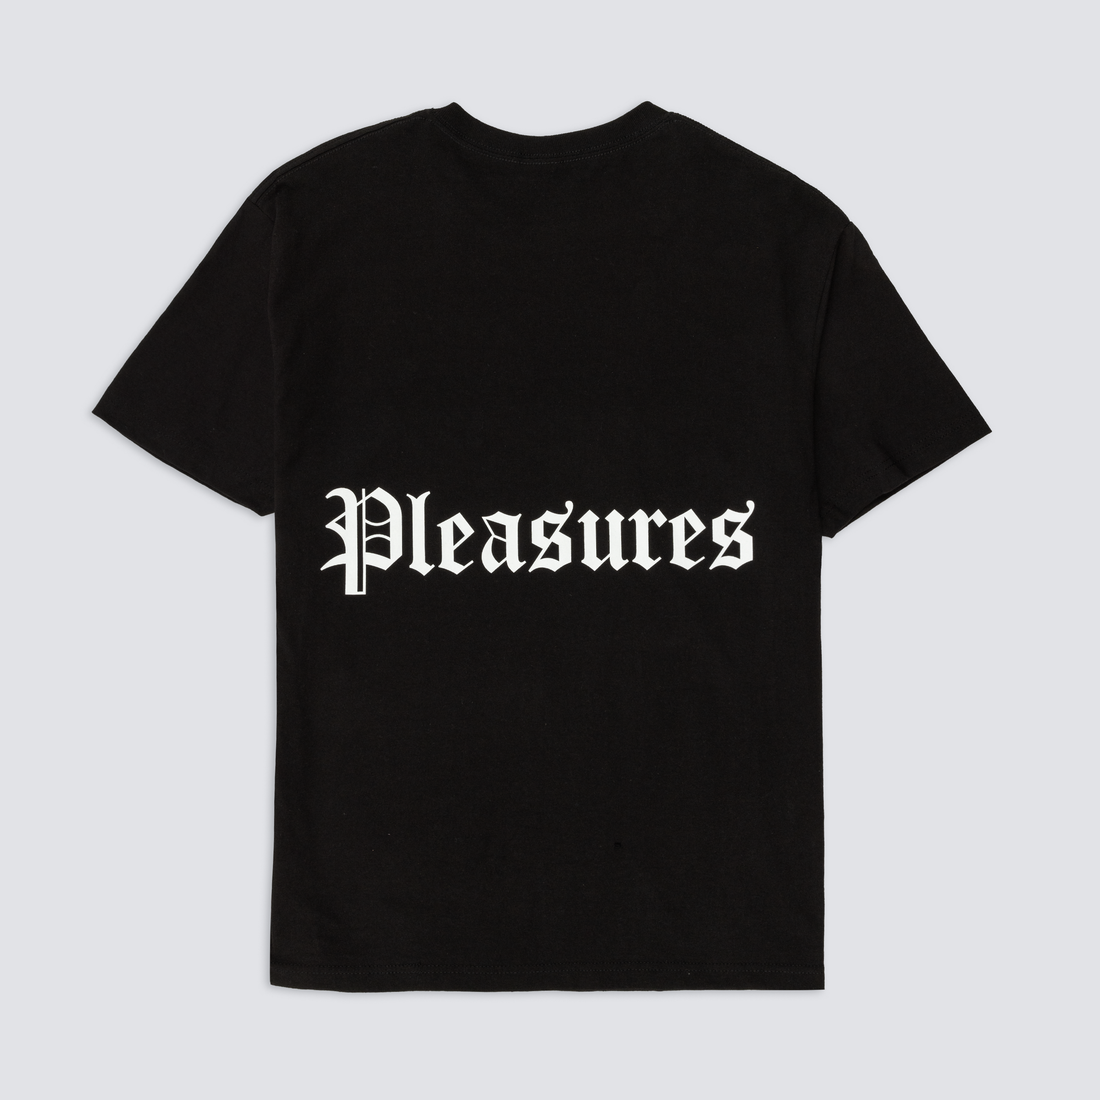 PLEASURES - MEDITATION TEE - BLACK